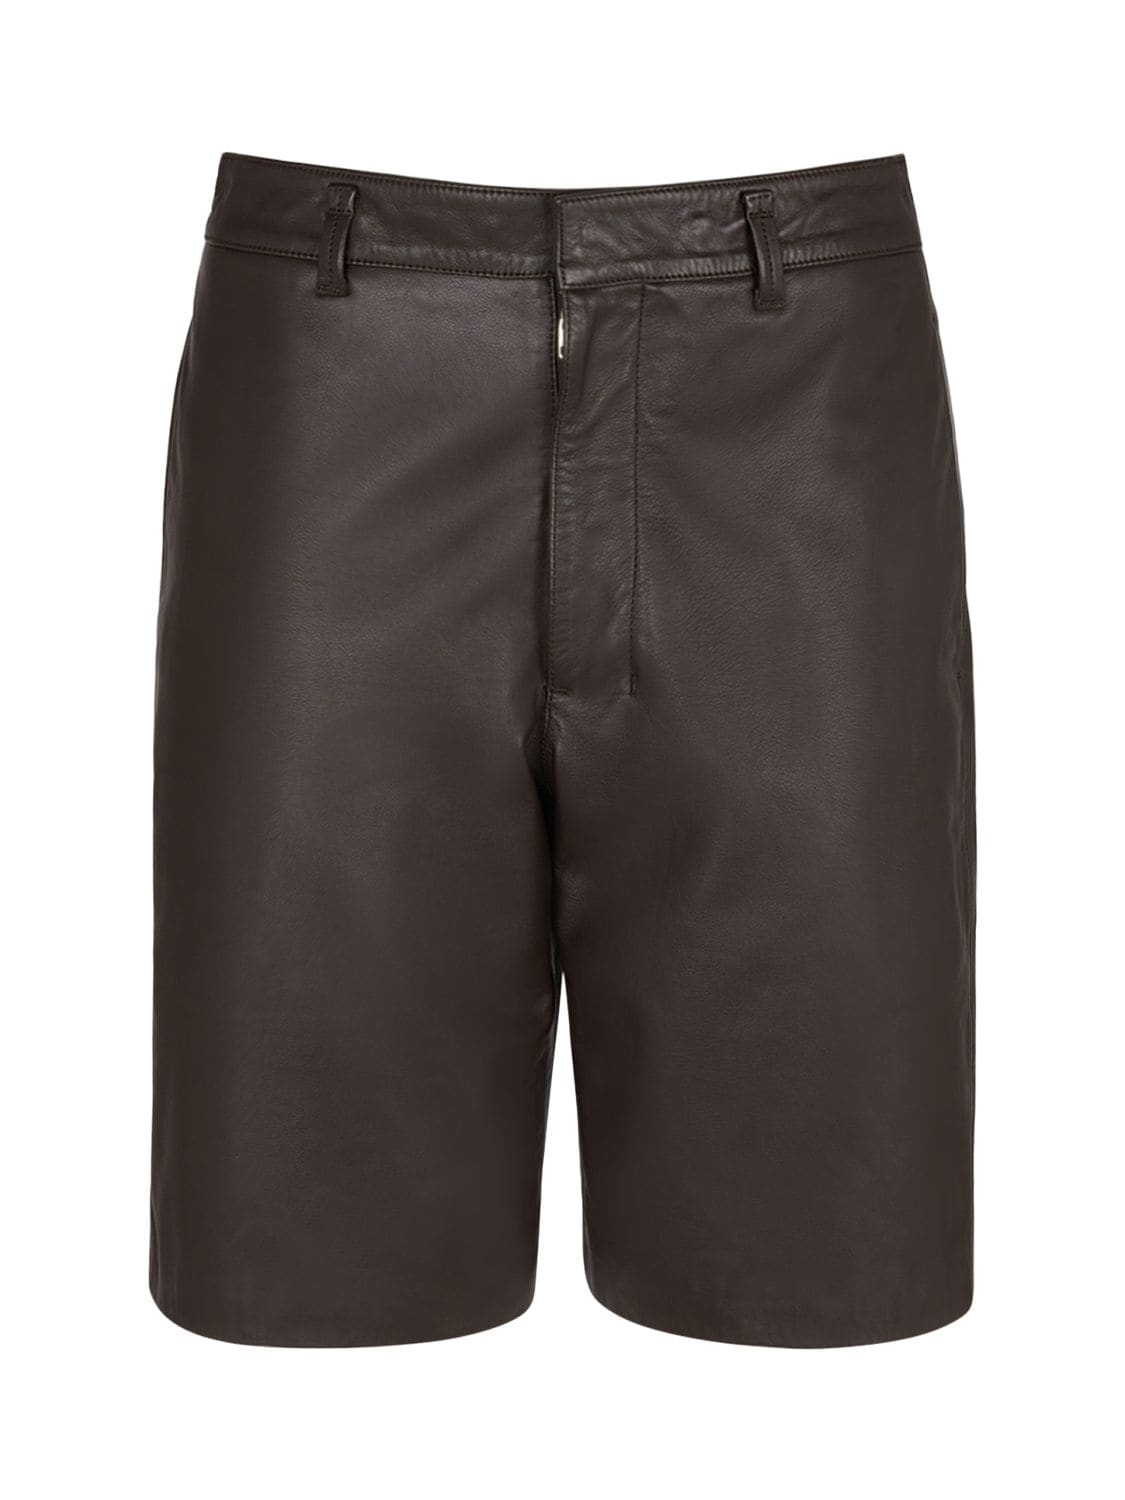 Image of Leather Shorts